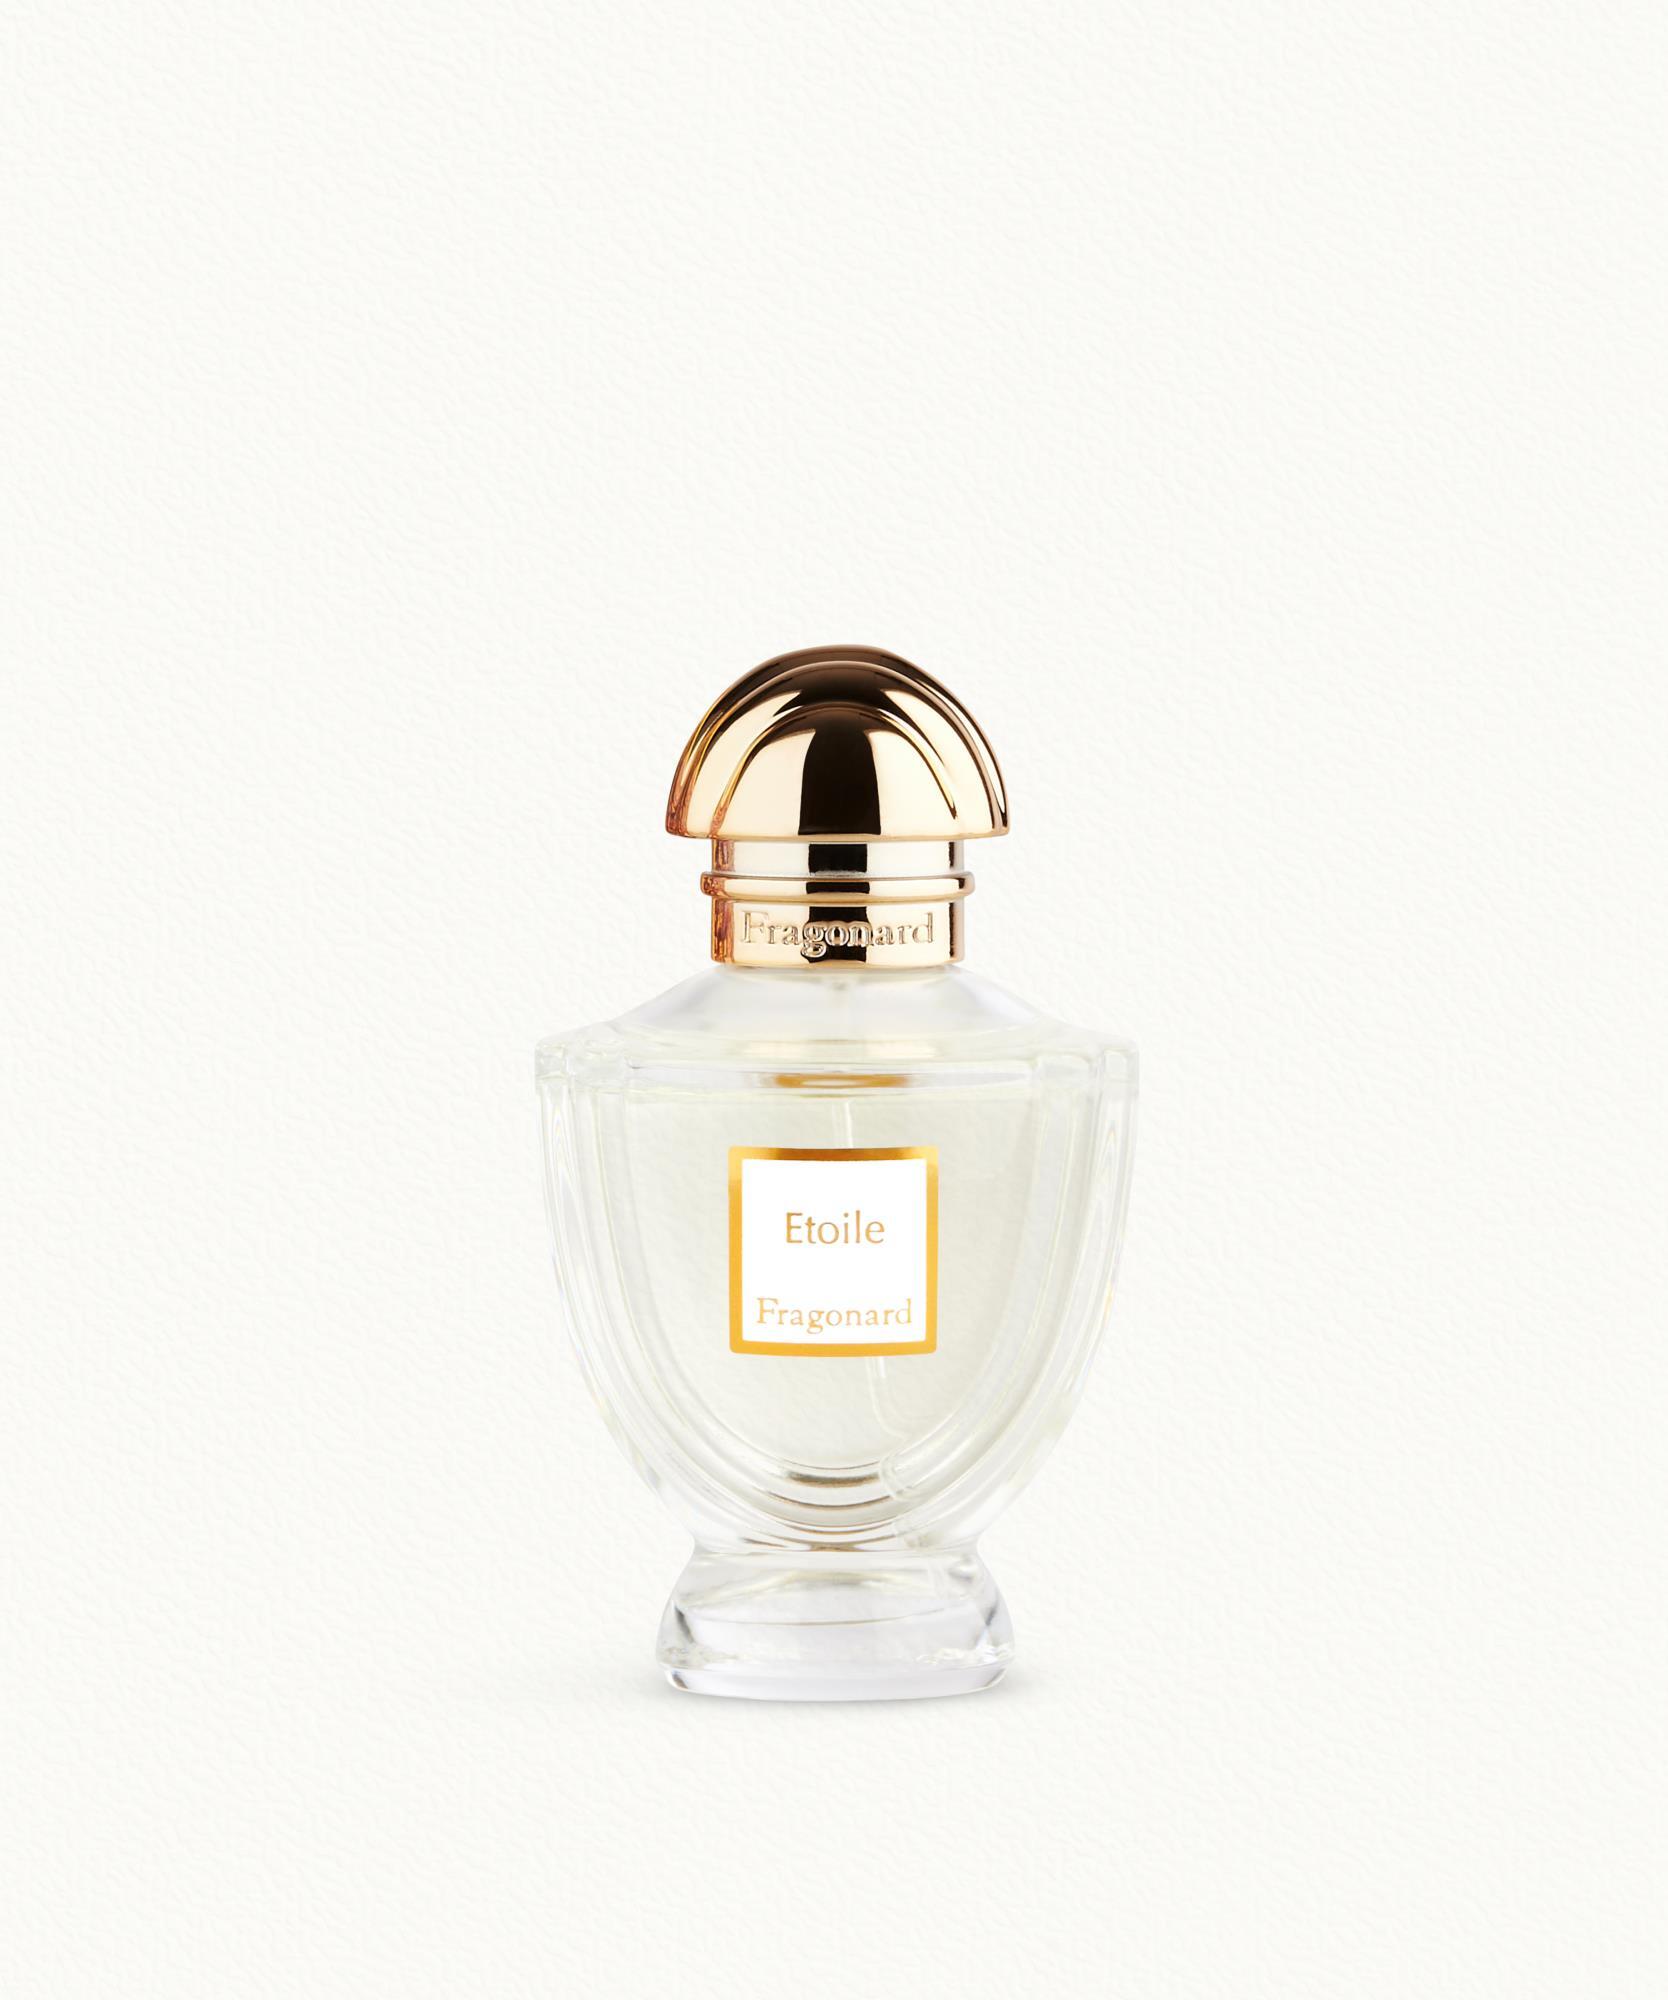 Etoile Eau de parfum Fragonard - $ 83.00